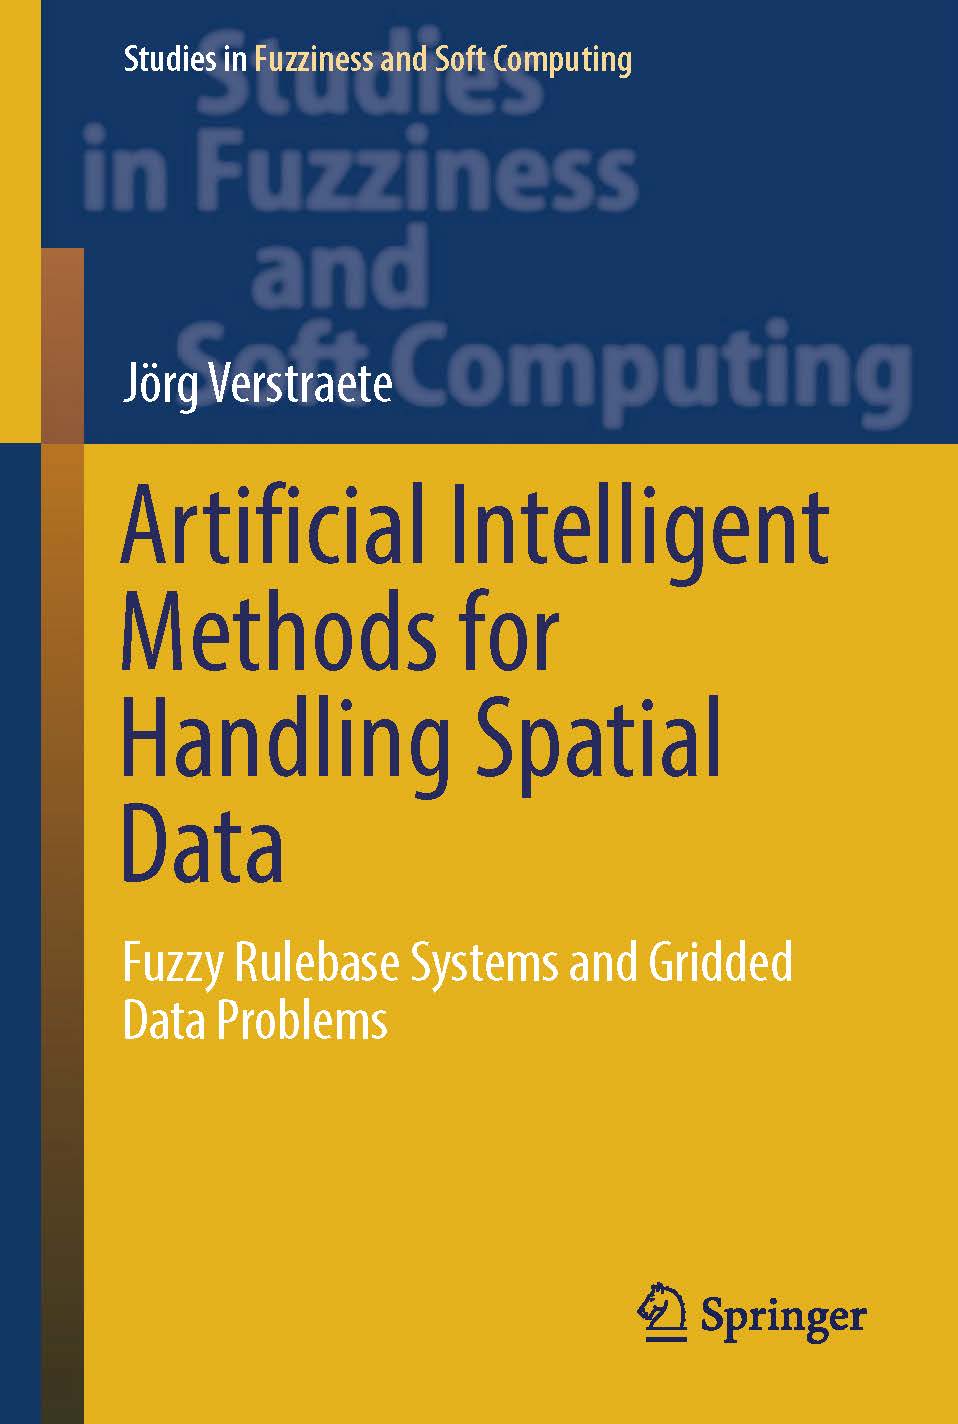 页面提取自－2019_Book_Artificial Intelligent Methods for Handling Spatial Data.jpg